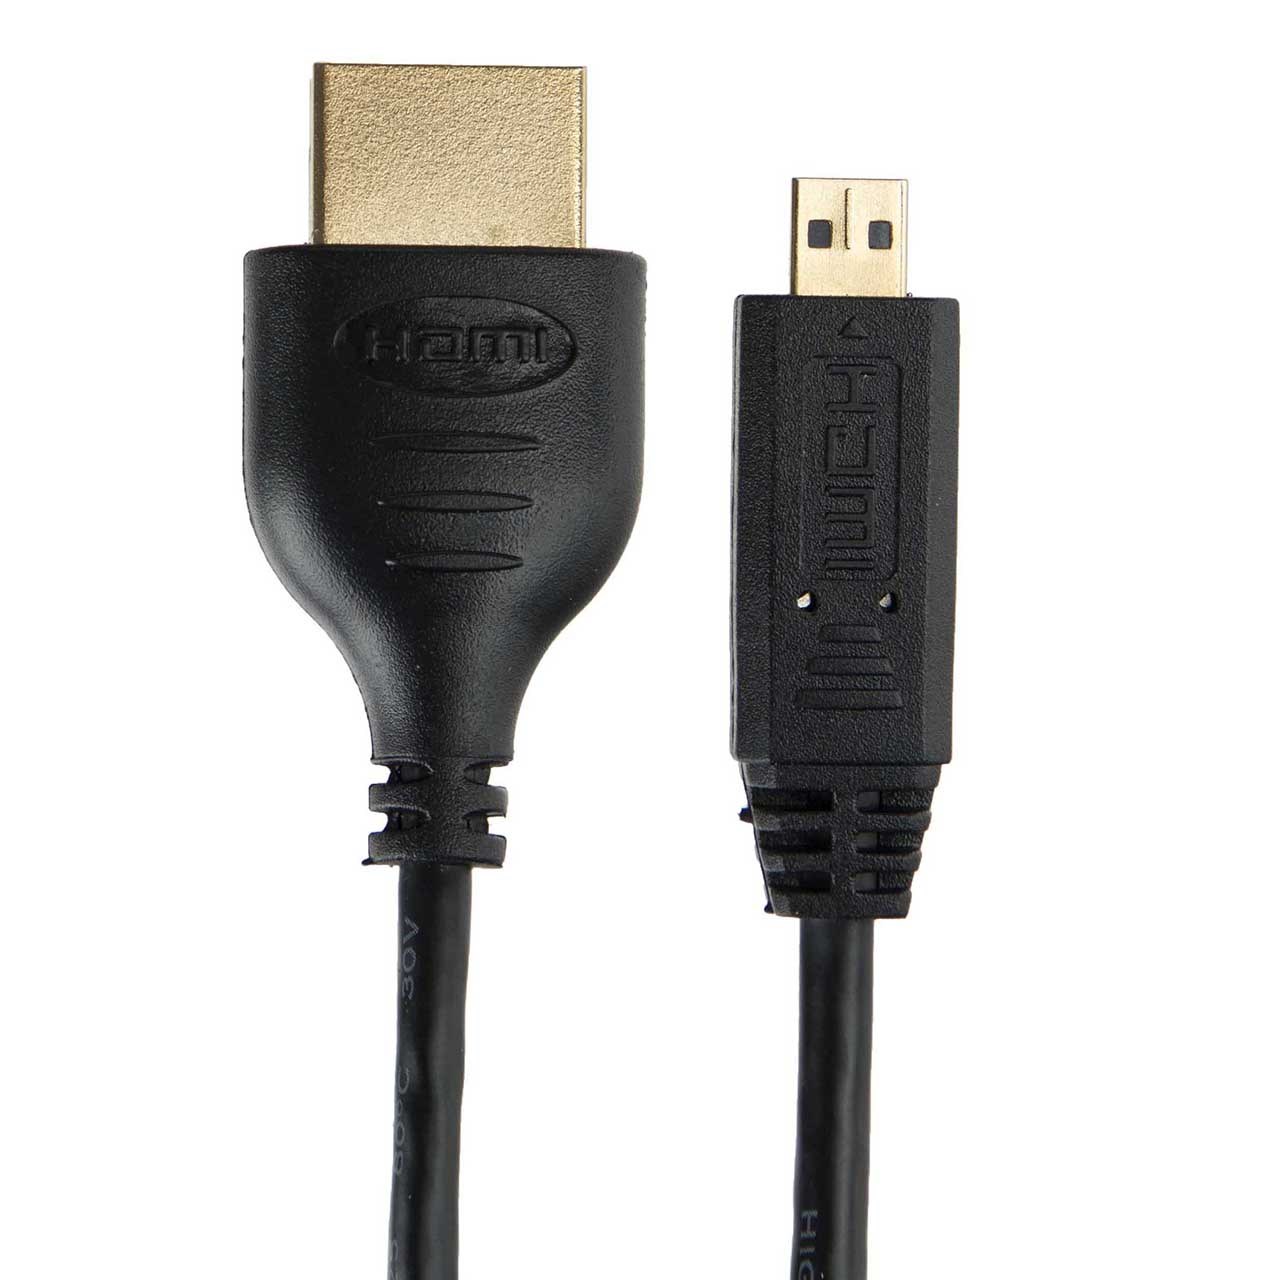 کابل HDMI به مینی HDMI ان تی آر مدل TC 02 طول 1.5 متر